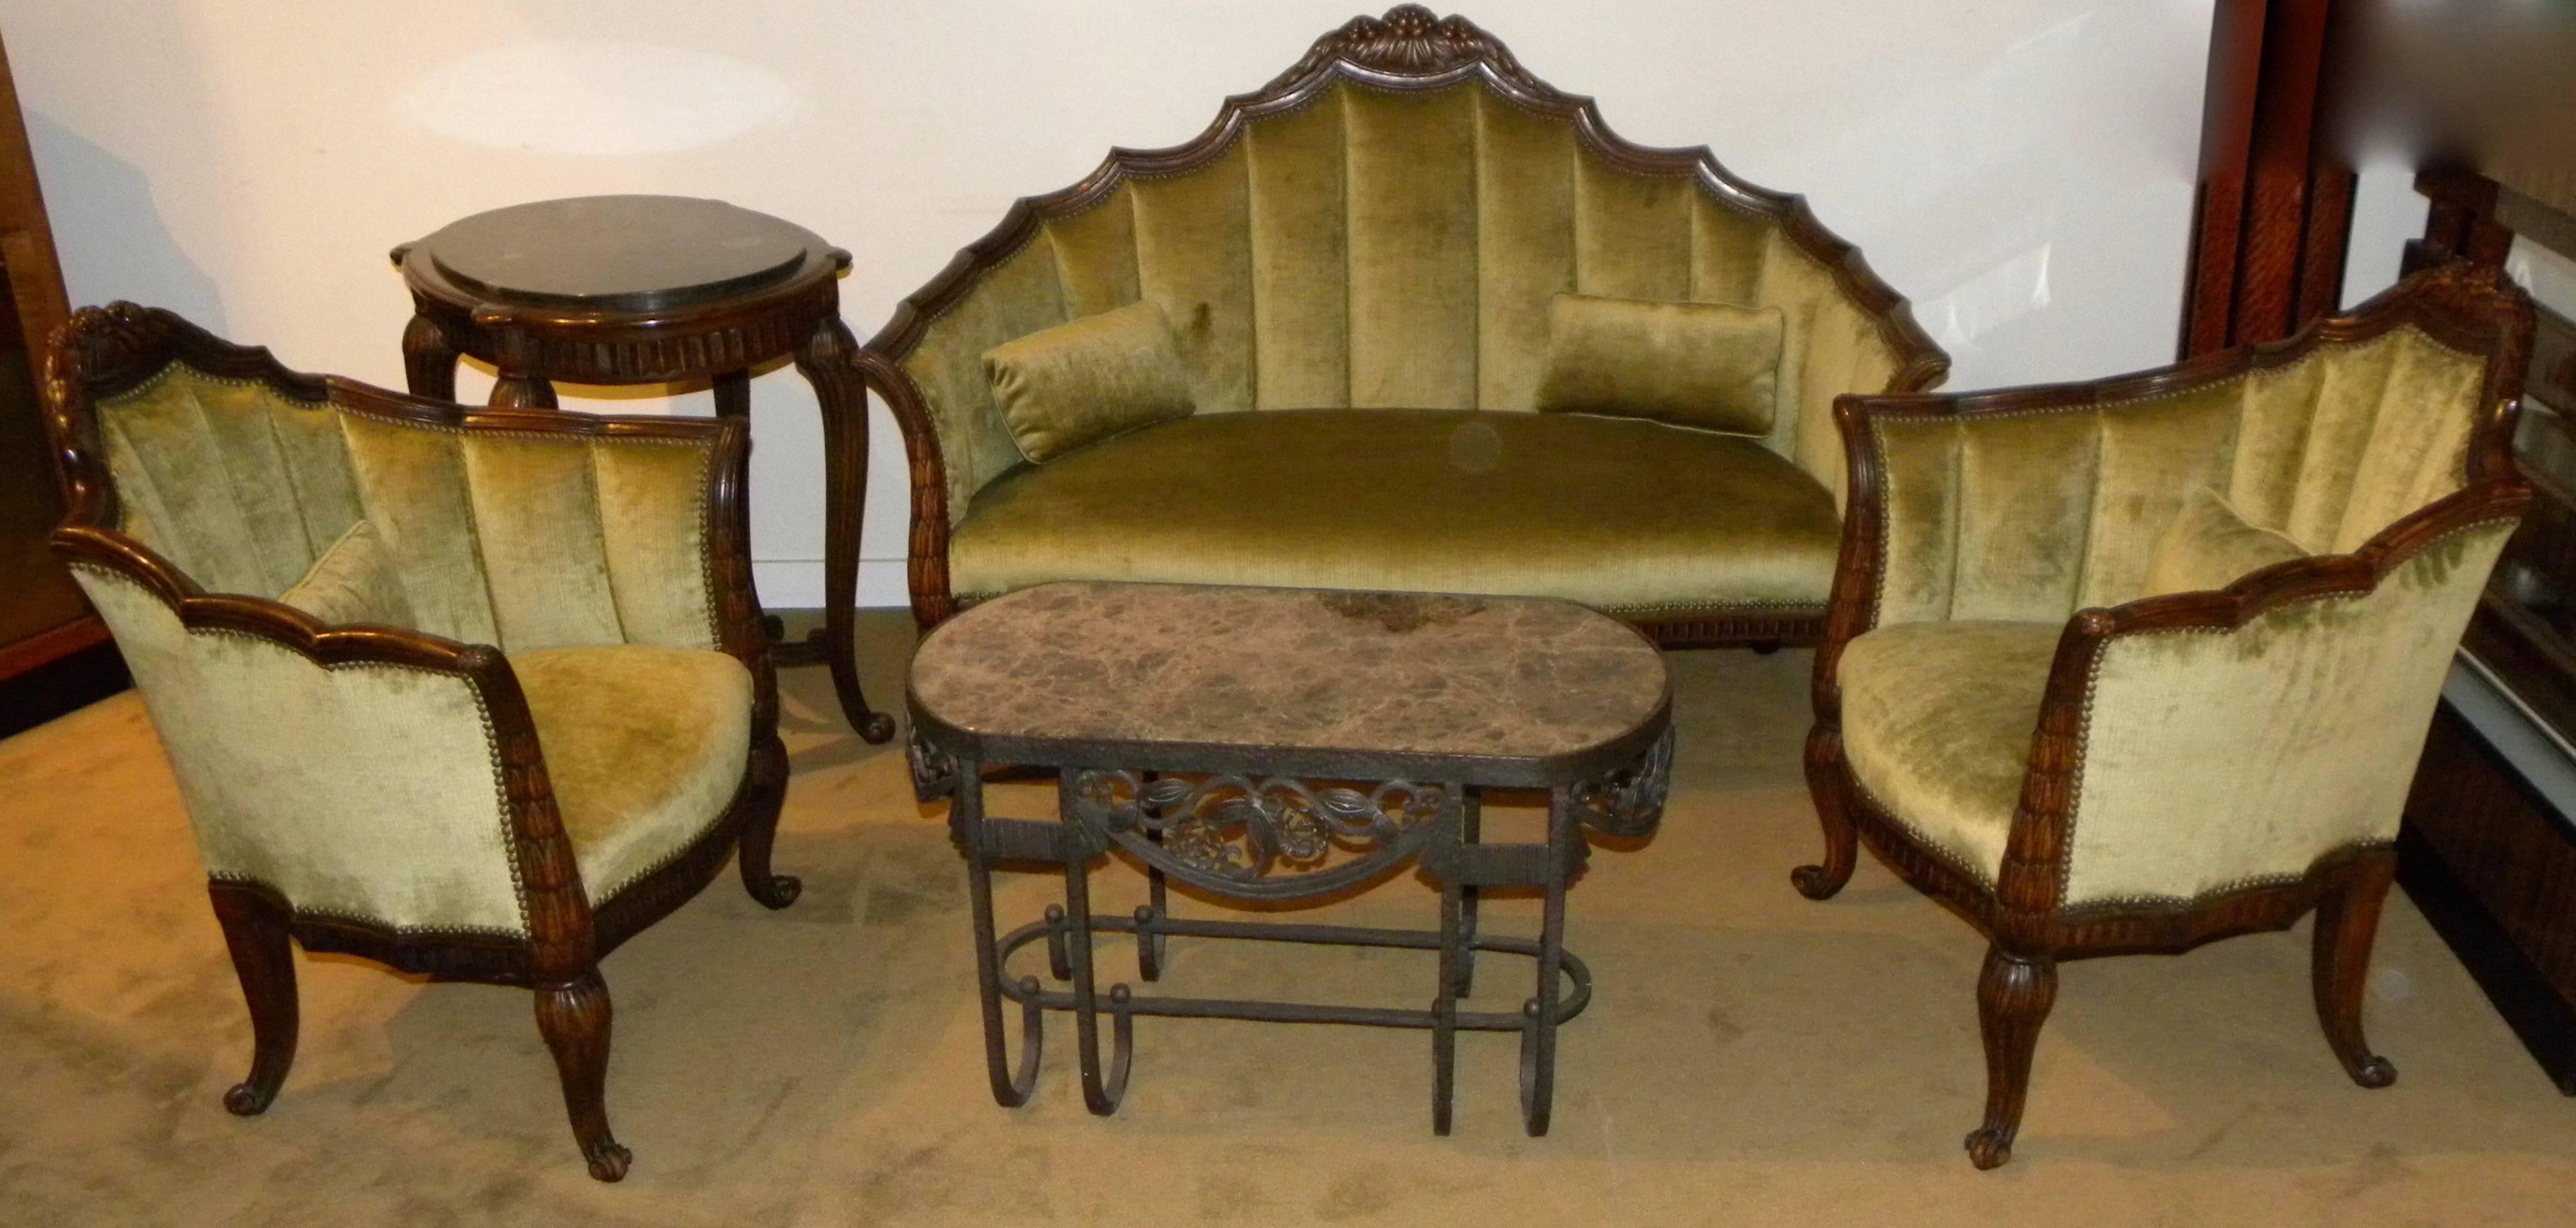 Canapé original Art Déco français, chaises et table assortie. Cet ensemble spectaculaire, dont le cadre est sculpté de manière complexe, représente l'artisanat d'antan, tout en bois massif. L'ensemble a été fabriqué vers 1920-1924 et représente la